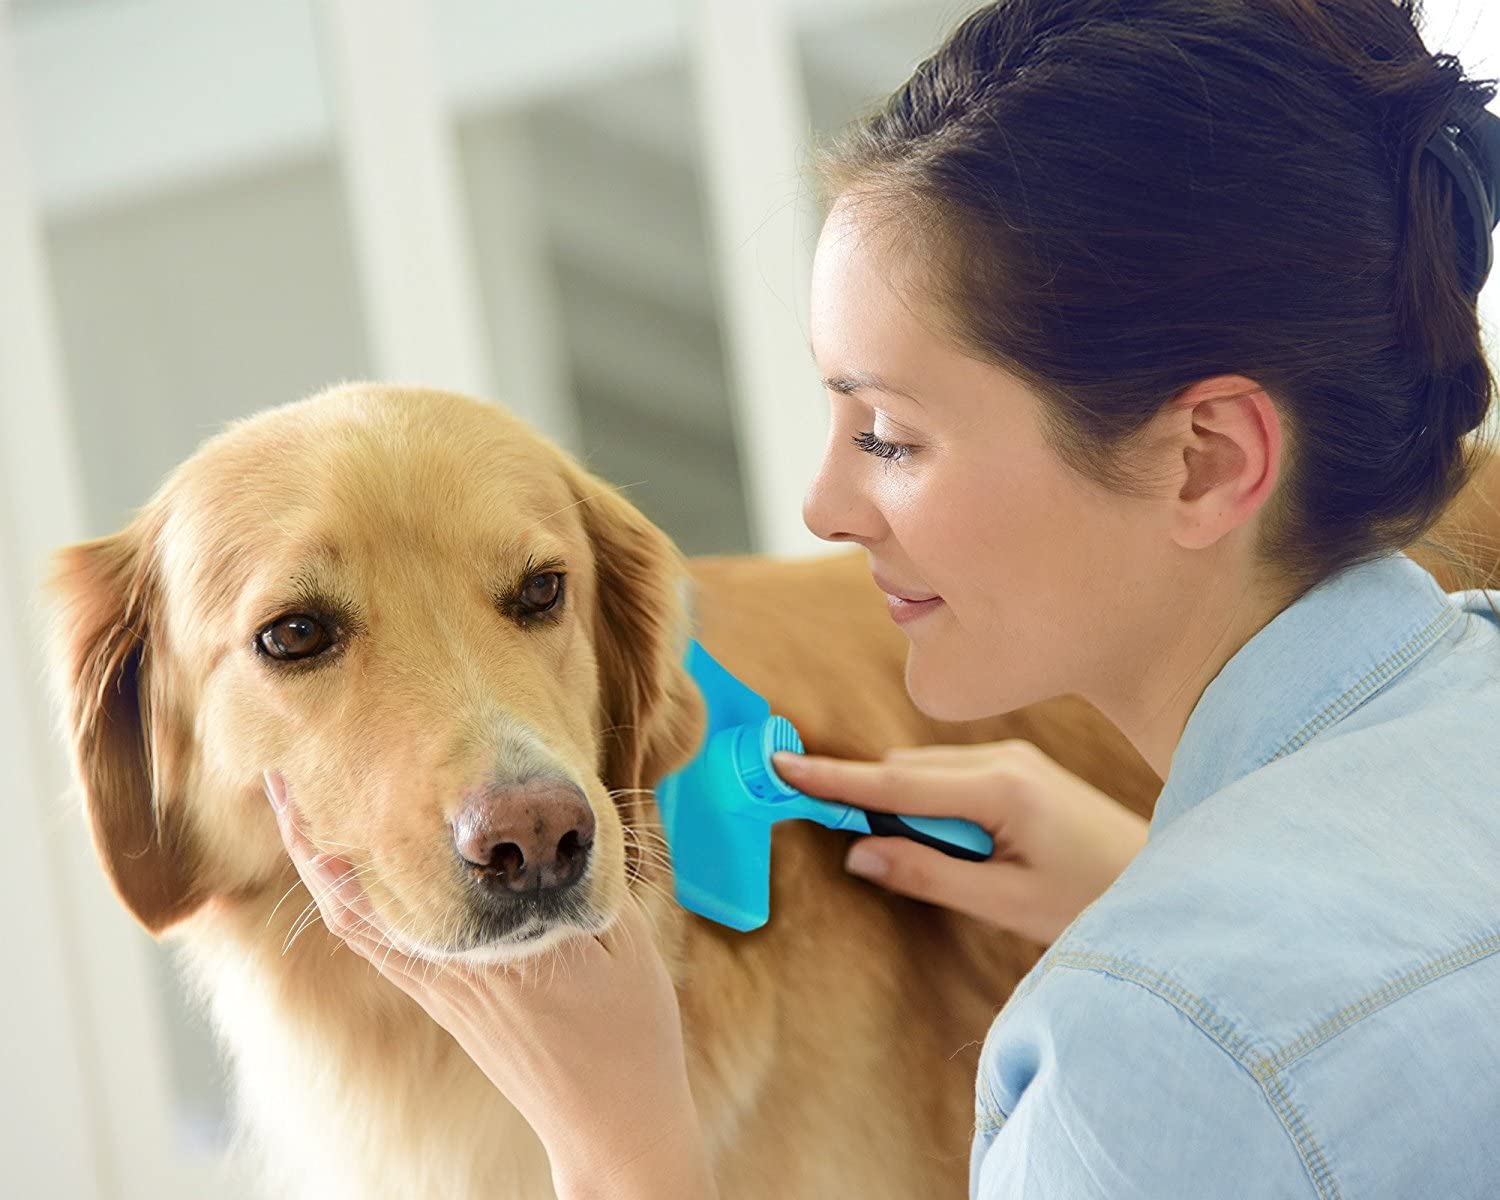  DakPets Pinceles para Perros Slicker, Cepillo de Limpieza para Mascotas – Elimina el 90% de los pelos Sueltos y Sueltos, Apto para Perros y Gatos de Pelo Mediano y Largo 